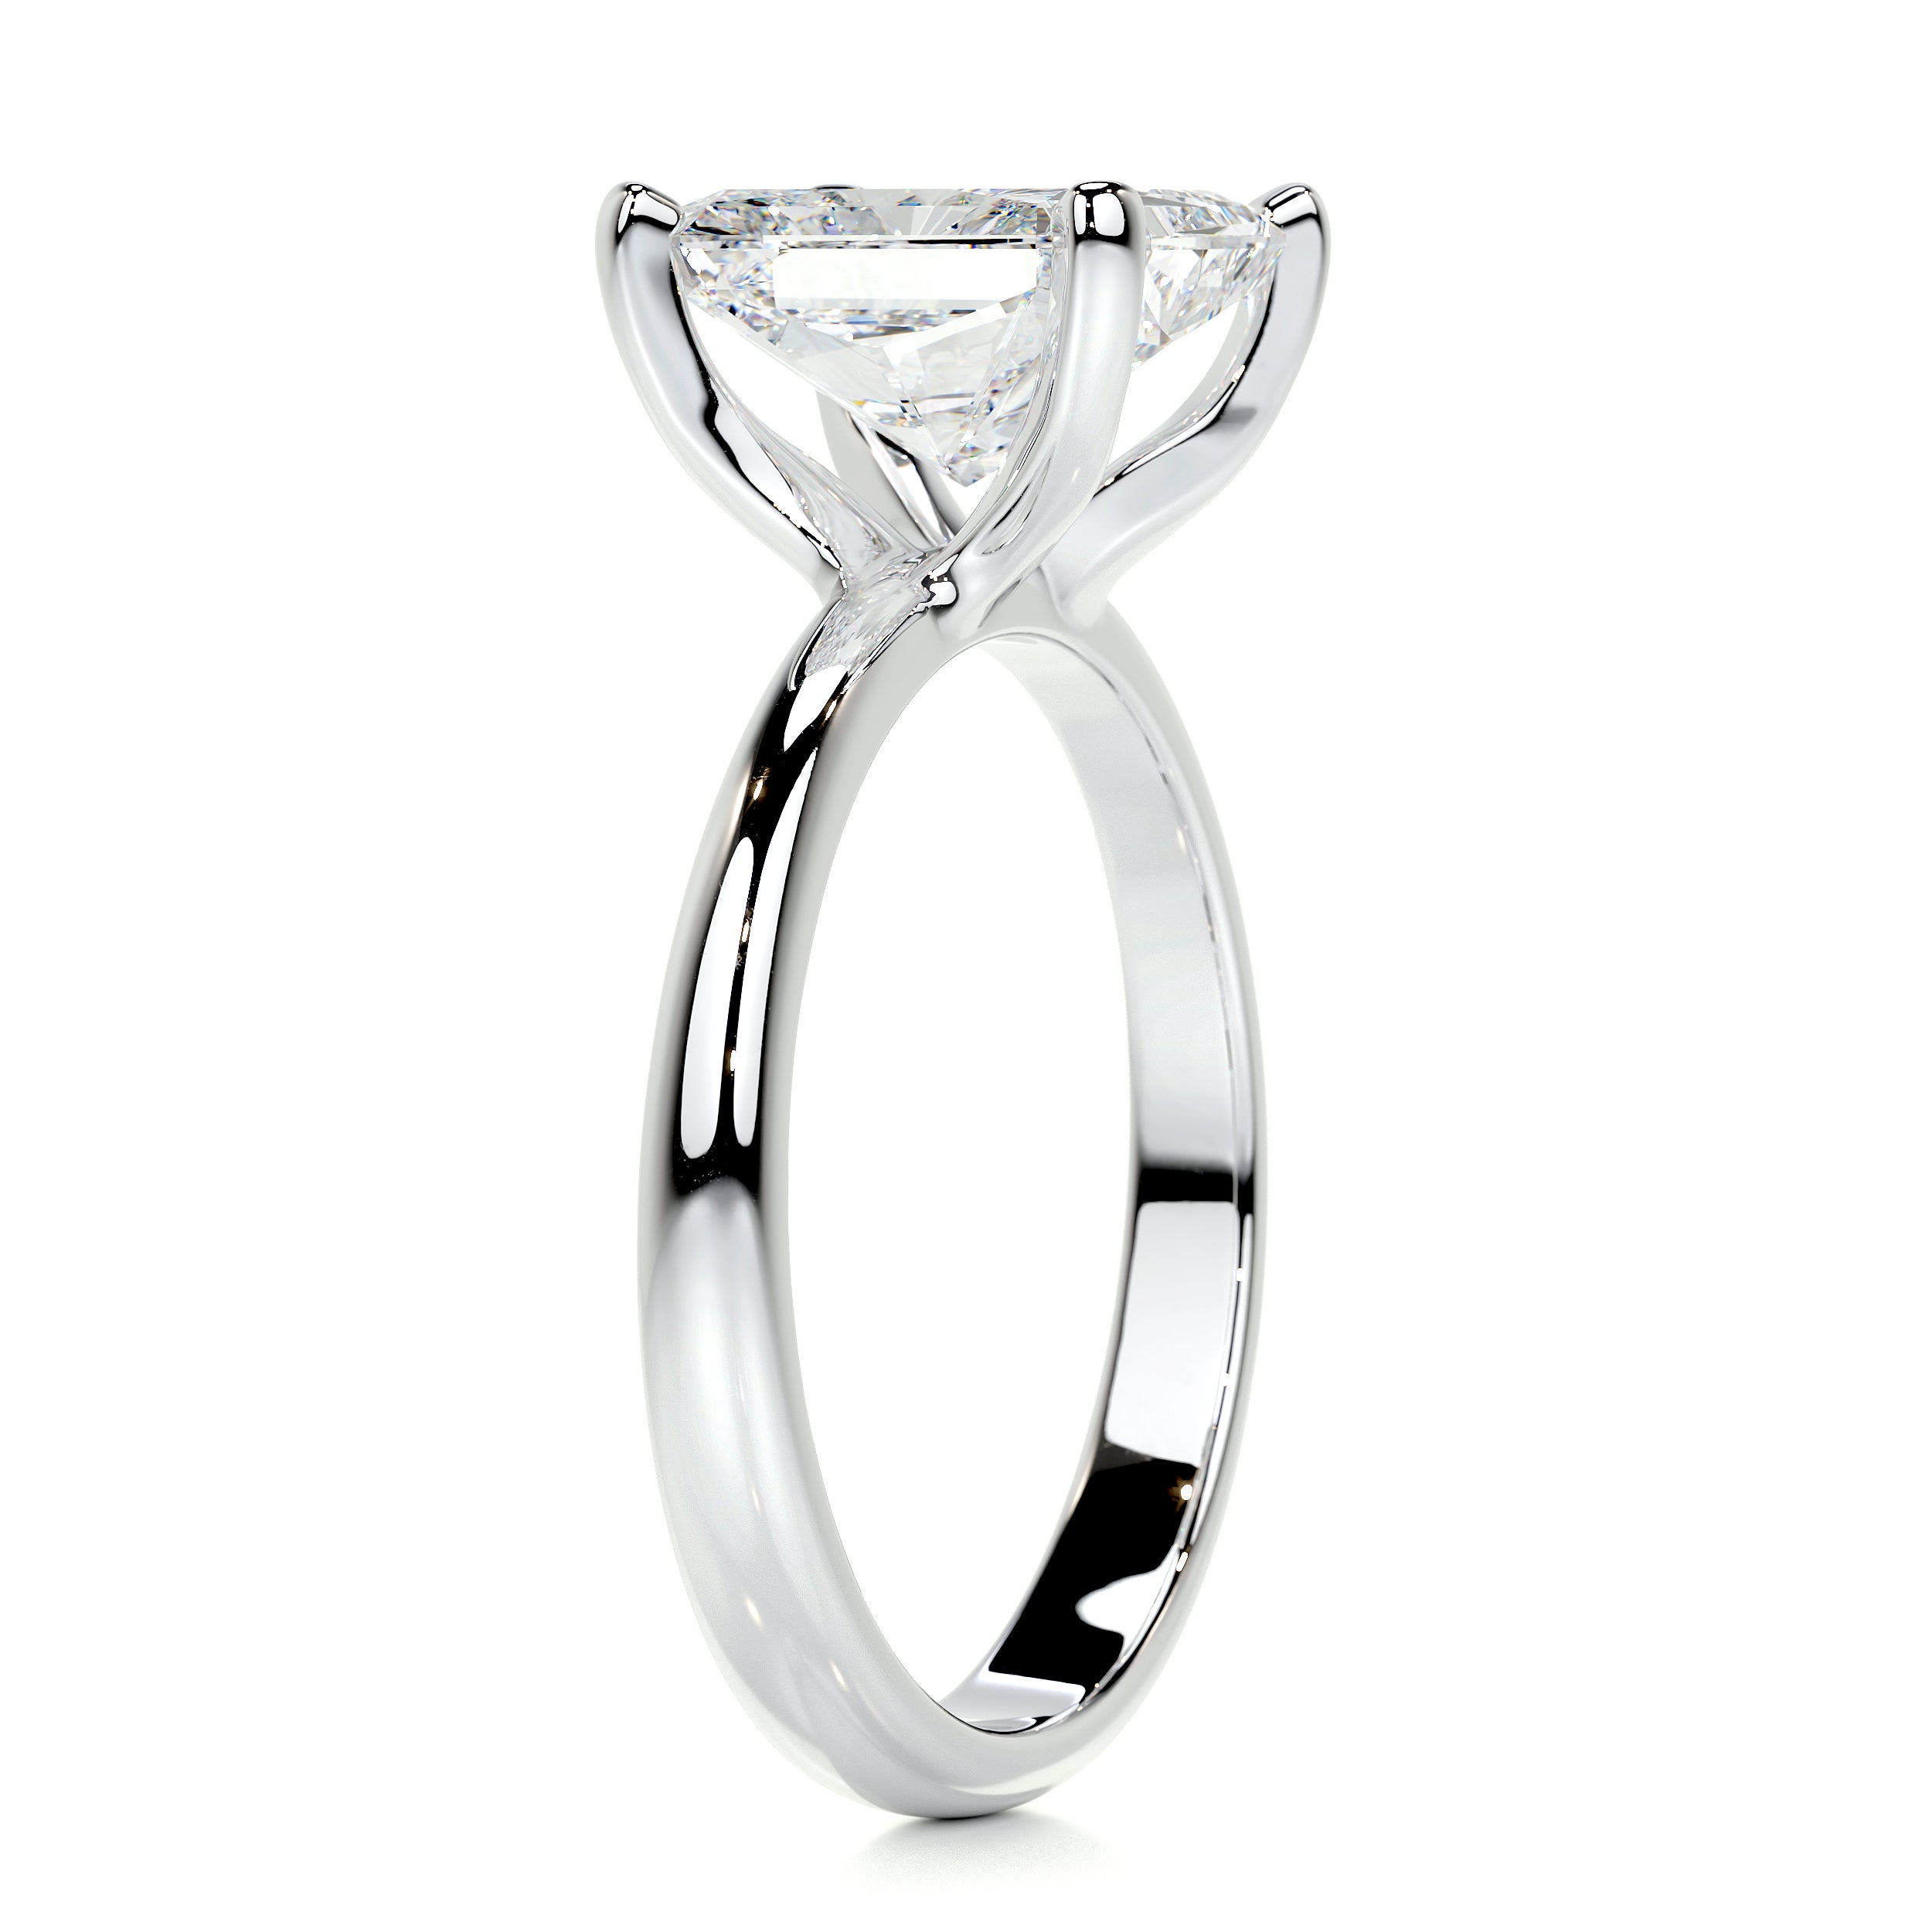 Julianna Diamond Engagement Ring -18K White Gold